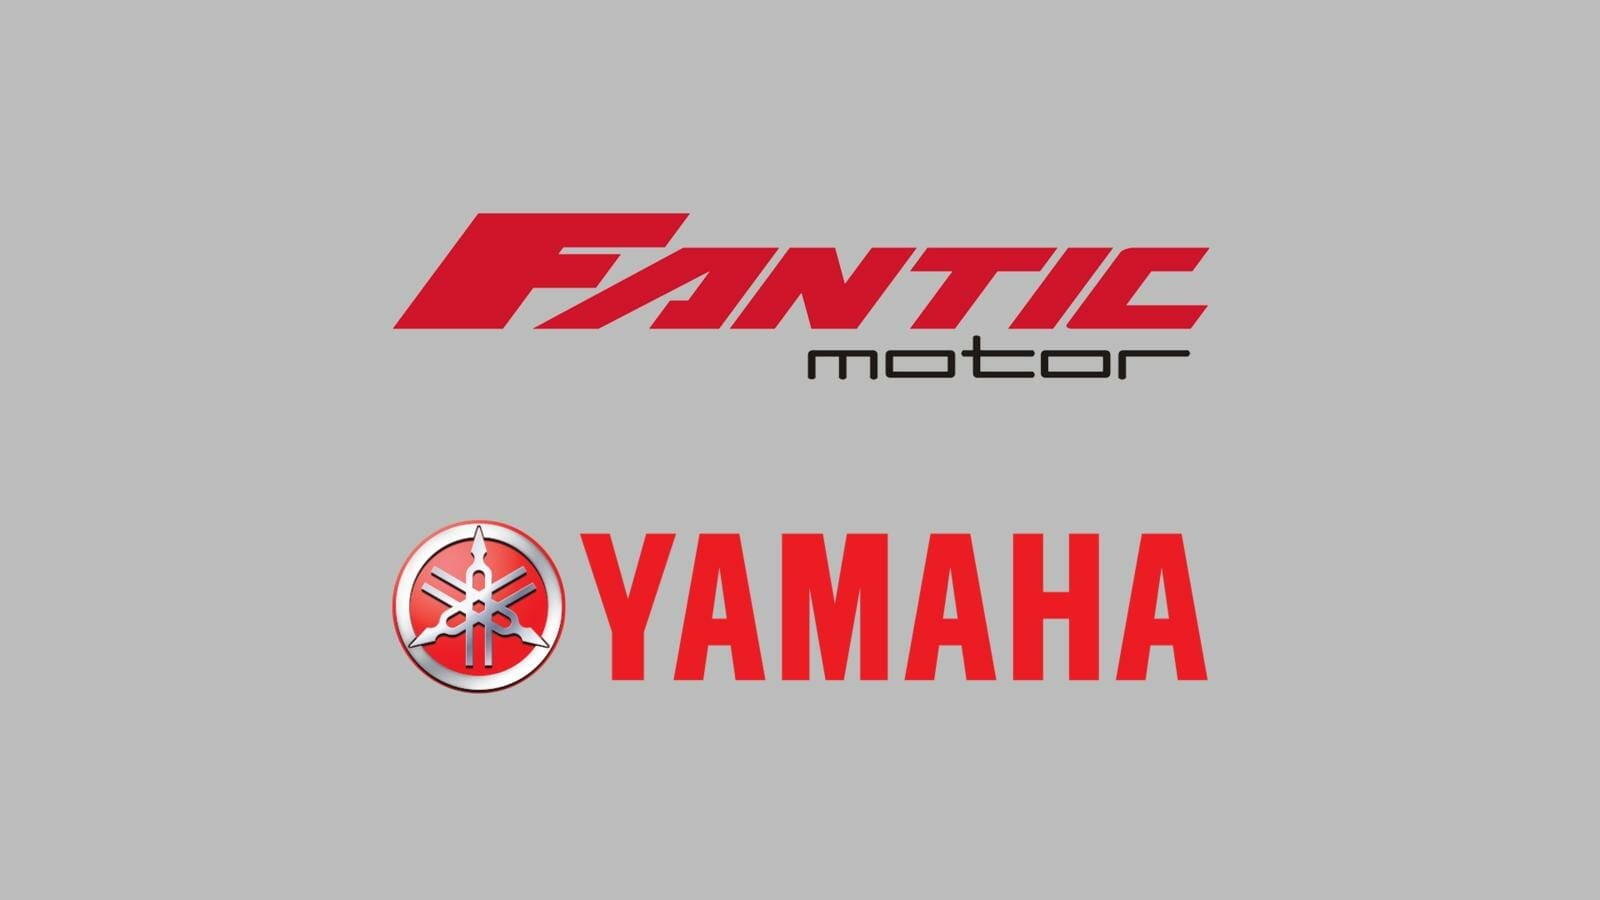 Yamaha Motor Europe und Fantic Motor verstärken Partnerschaft
- auch in der MOTORRAD NACHRICHTEN APP